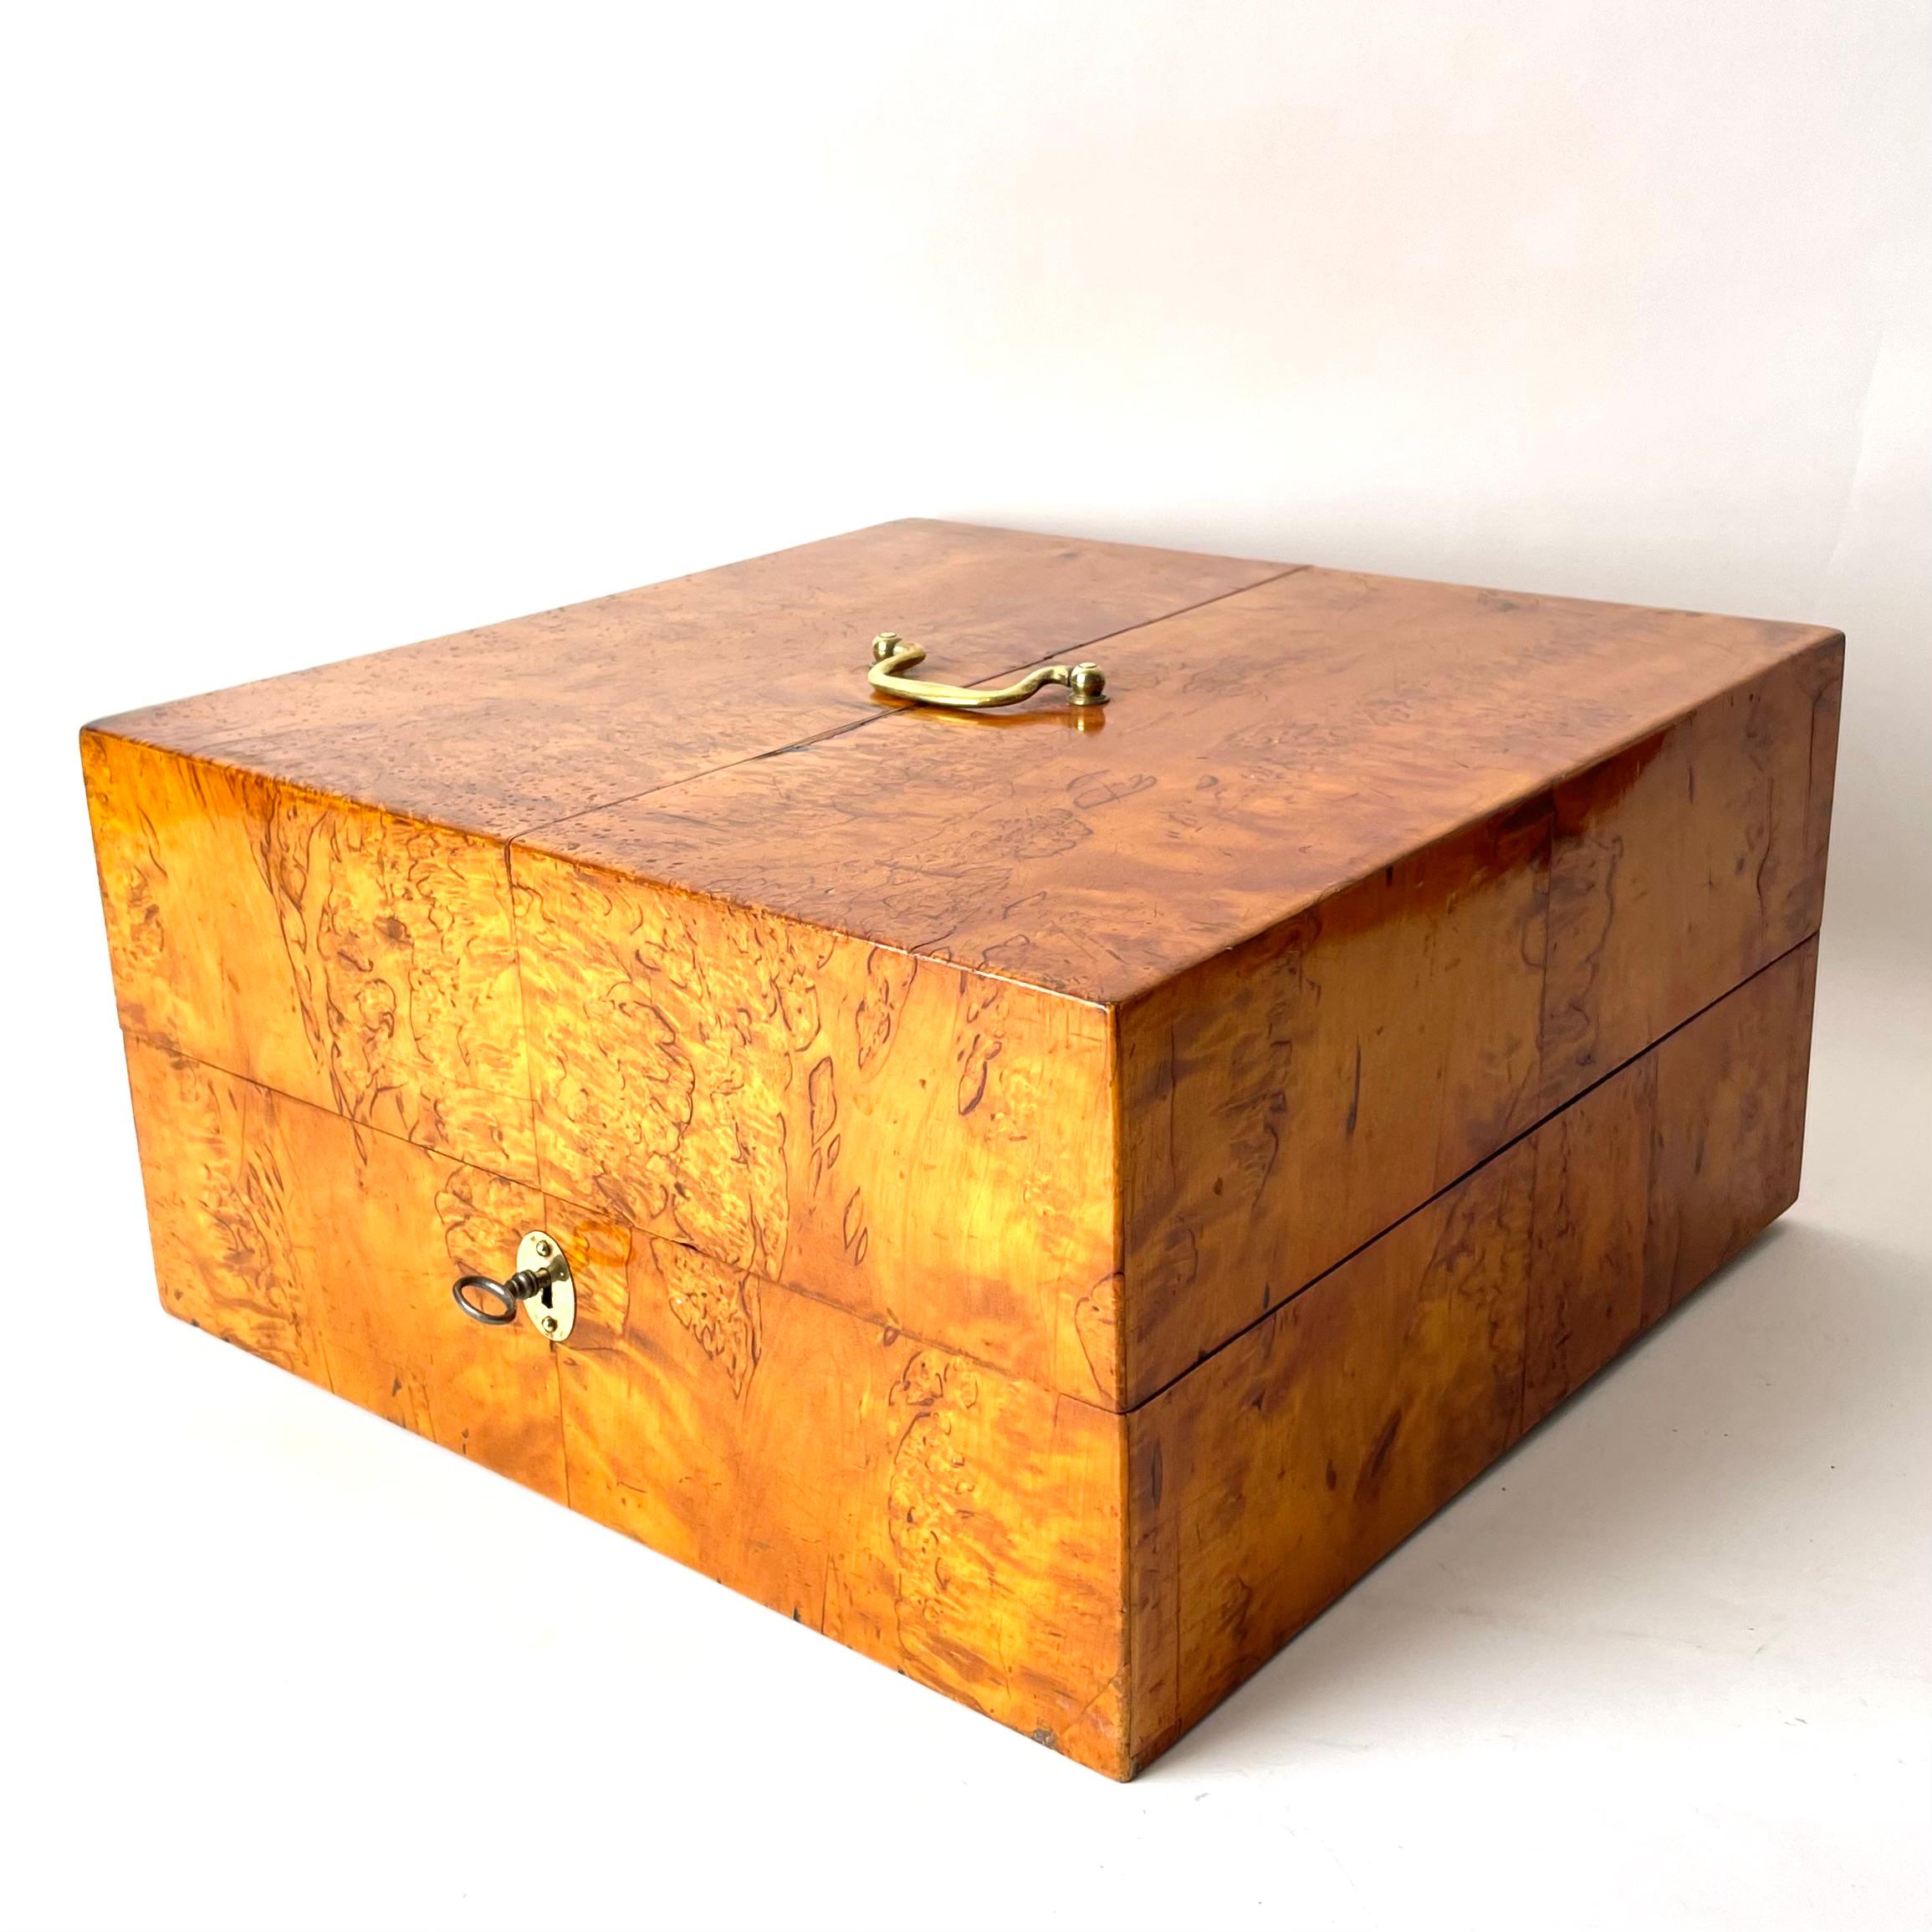 Schwedische Backgammom-Box aus gewellter karelischer Birke mit Spielsteinen, Swedish Empire  (Karl Johan) 1820/30er Jahre. Komplett mit zwei Würfeln aus Knochen und Spielfiguren für zwei Spieler.

Diese wunderschön gearbeitete Backgammon-Box ist aus